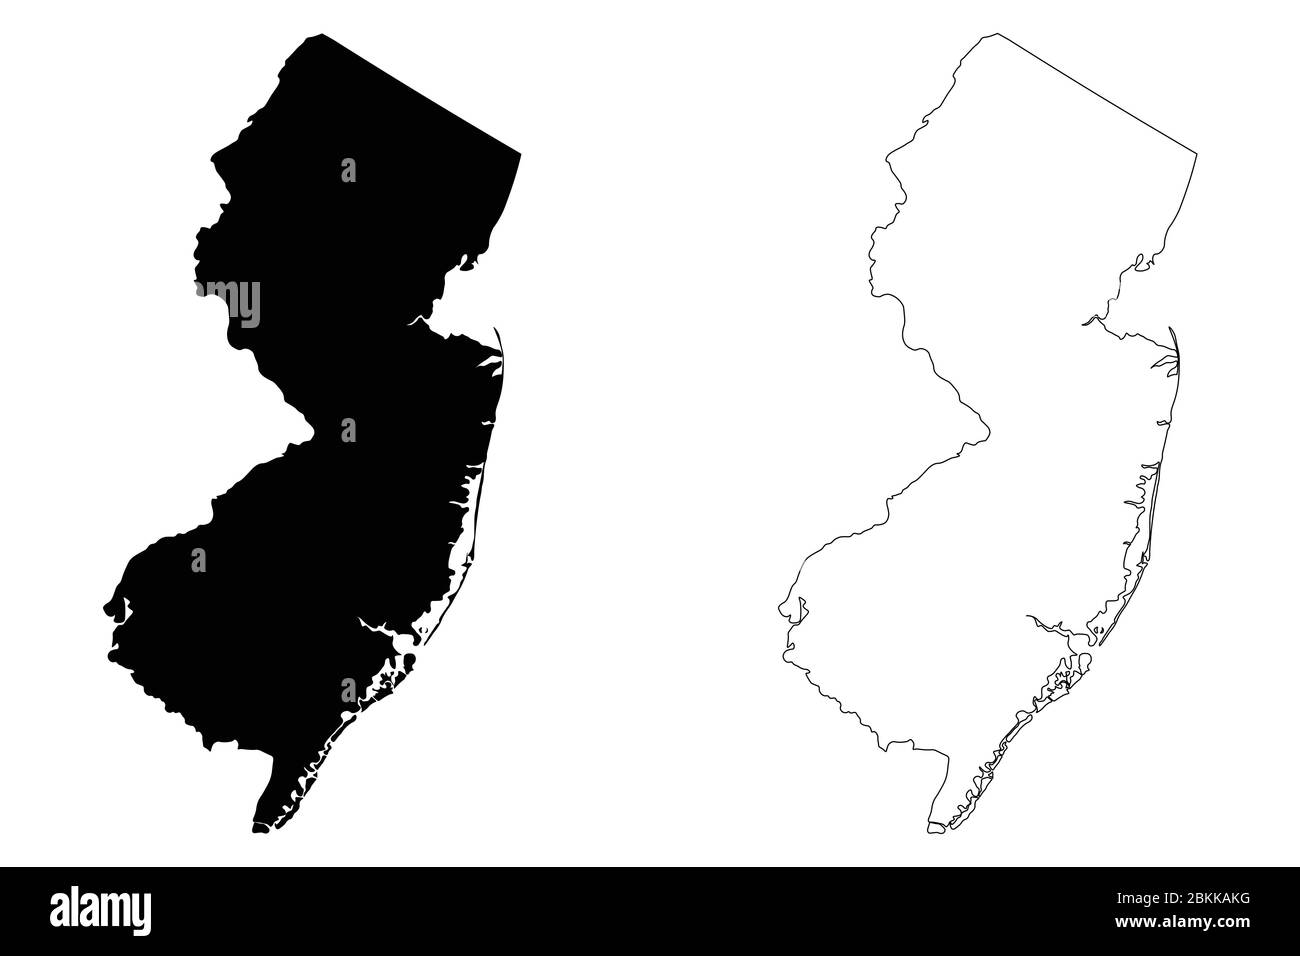 Karten für New Jersey, Bundesstaat New Jersey, New Jersey. Schwarze Silhouette und Umriss isoliert auf weißem Hintergrund. EPS-Vektor Stock Vektor